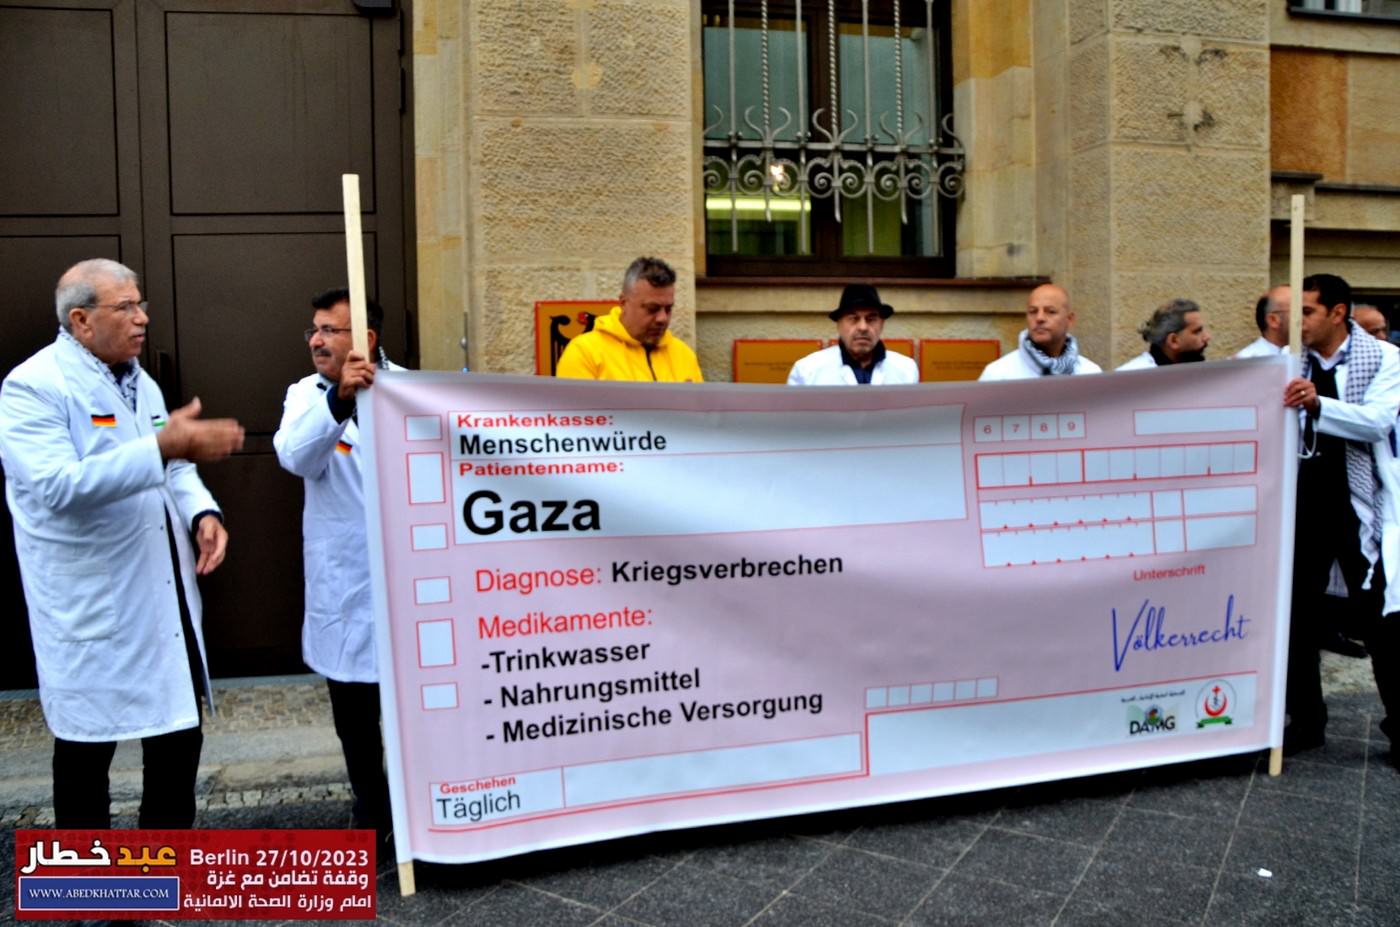 وقفة تضامن مع غزة بدعوة من الجمعية الطبية العربية الالمانية و اتحاد الاطباء والصيادله الفلسطينيين المانيا امام وزارة الصحة الالمانية